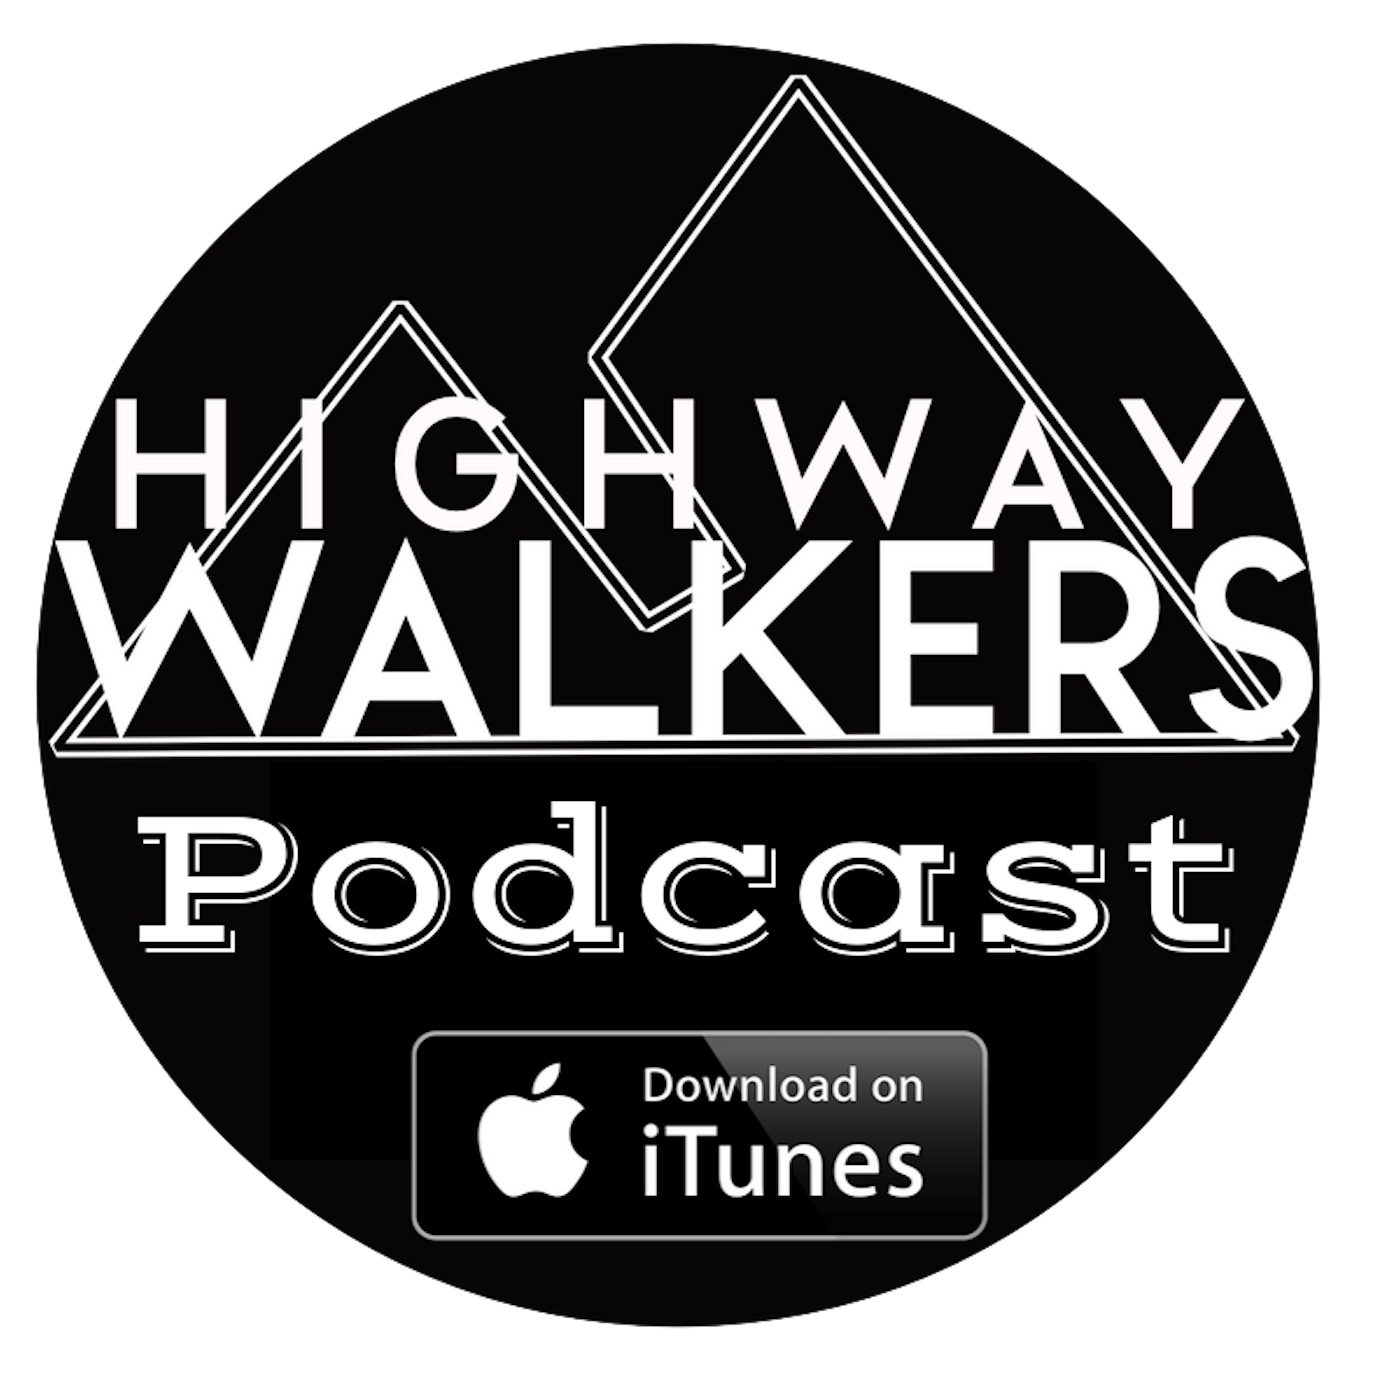 The Highway Walkers